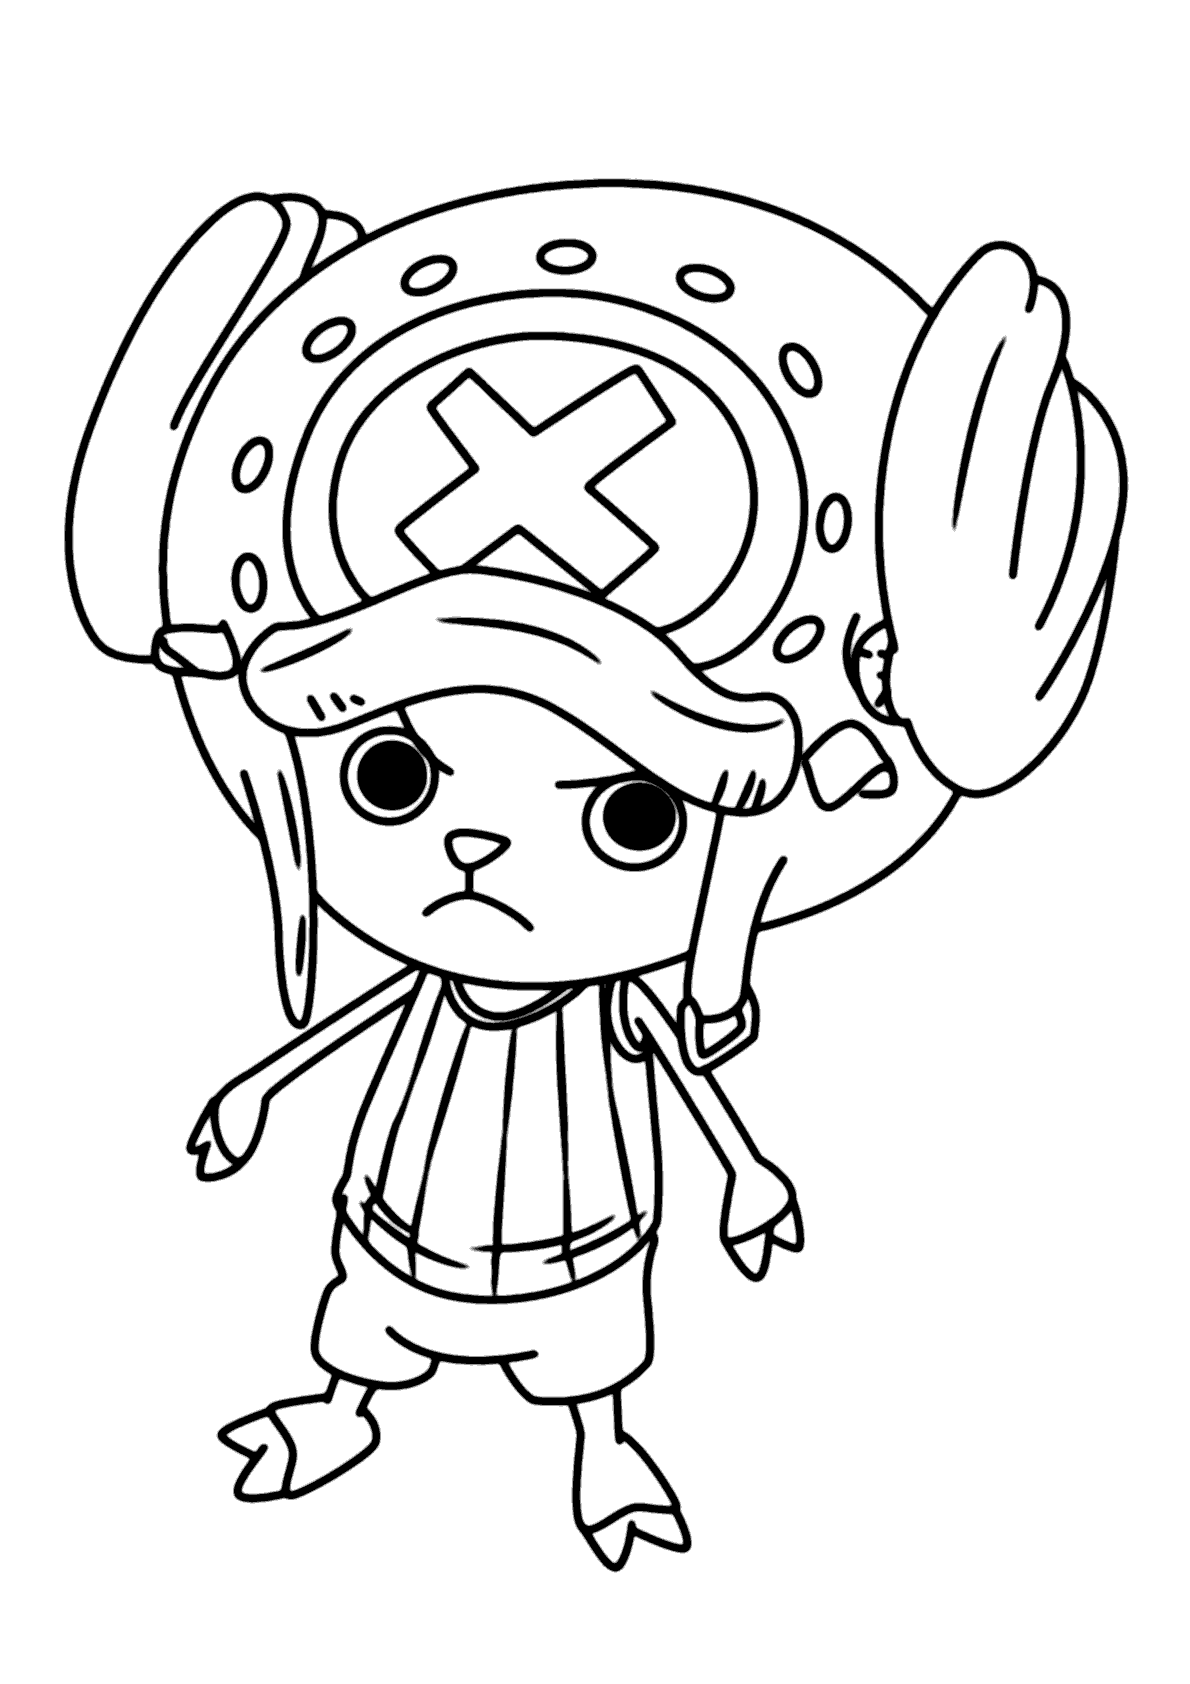 150+ Desenhos do One Piece para Imprimir e Colorir/Pintar